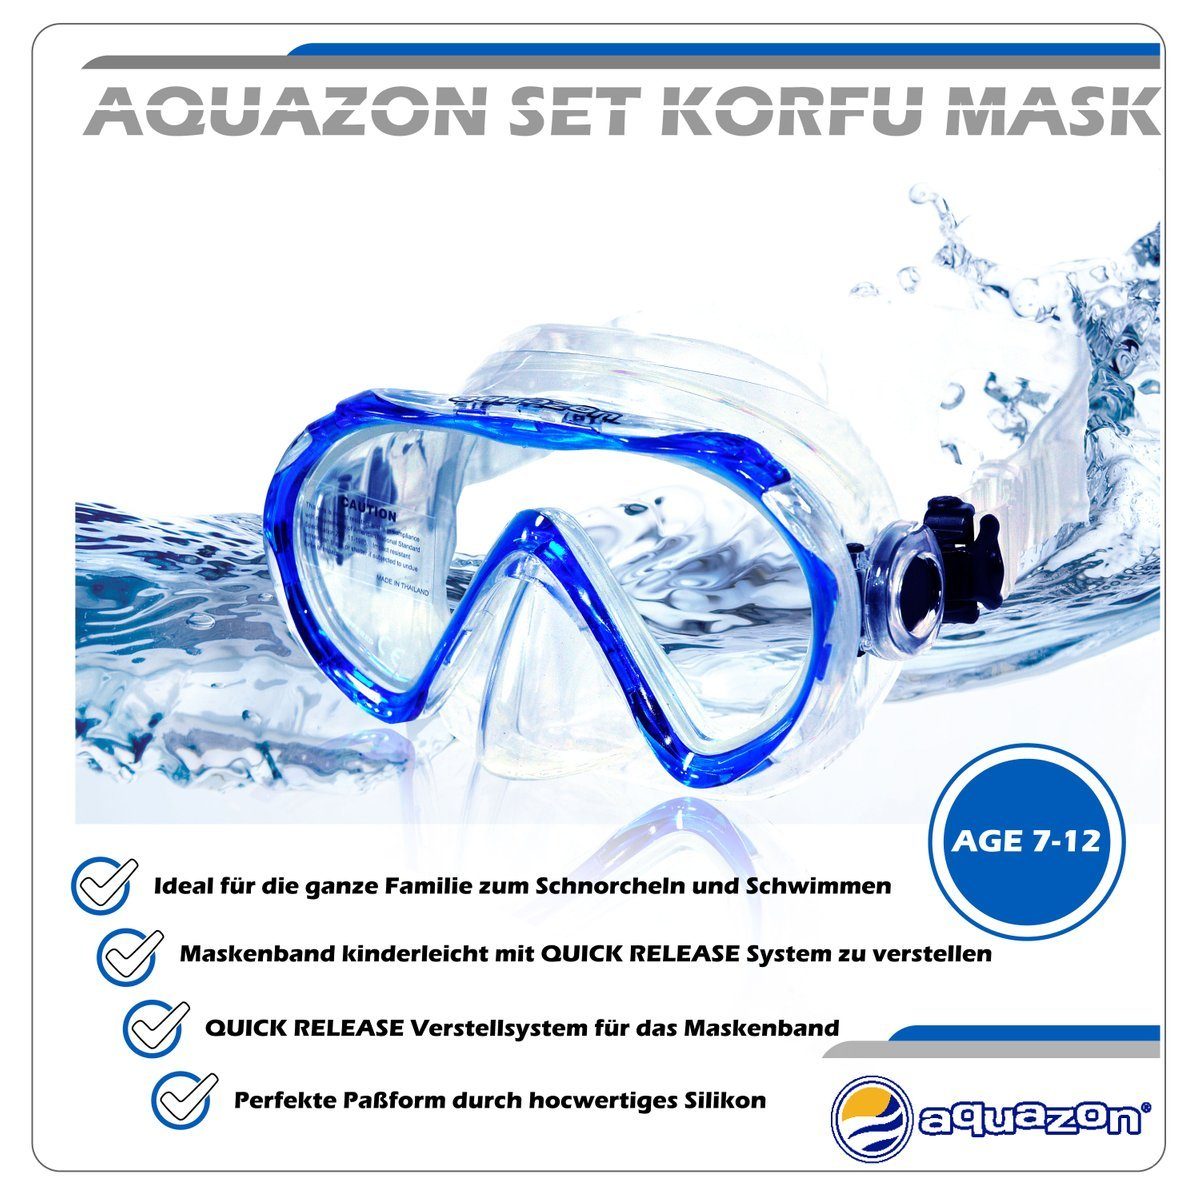 AQUAZON Taucherbrille KORFU mit Schnorchel, für 7-12 blue Schnorchelset Jahren Kinder